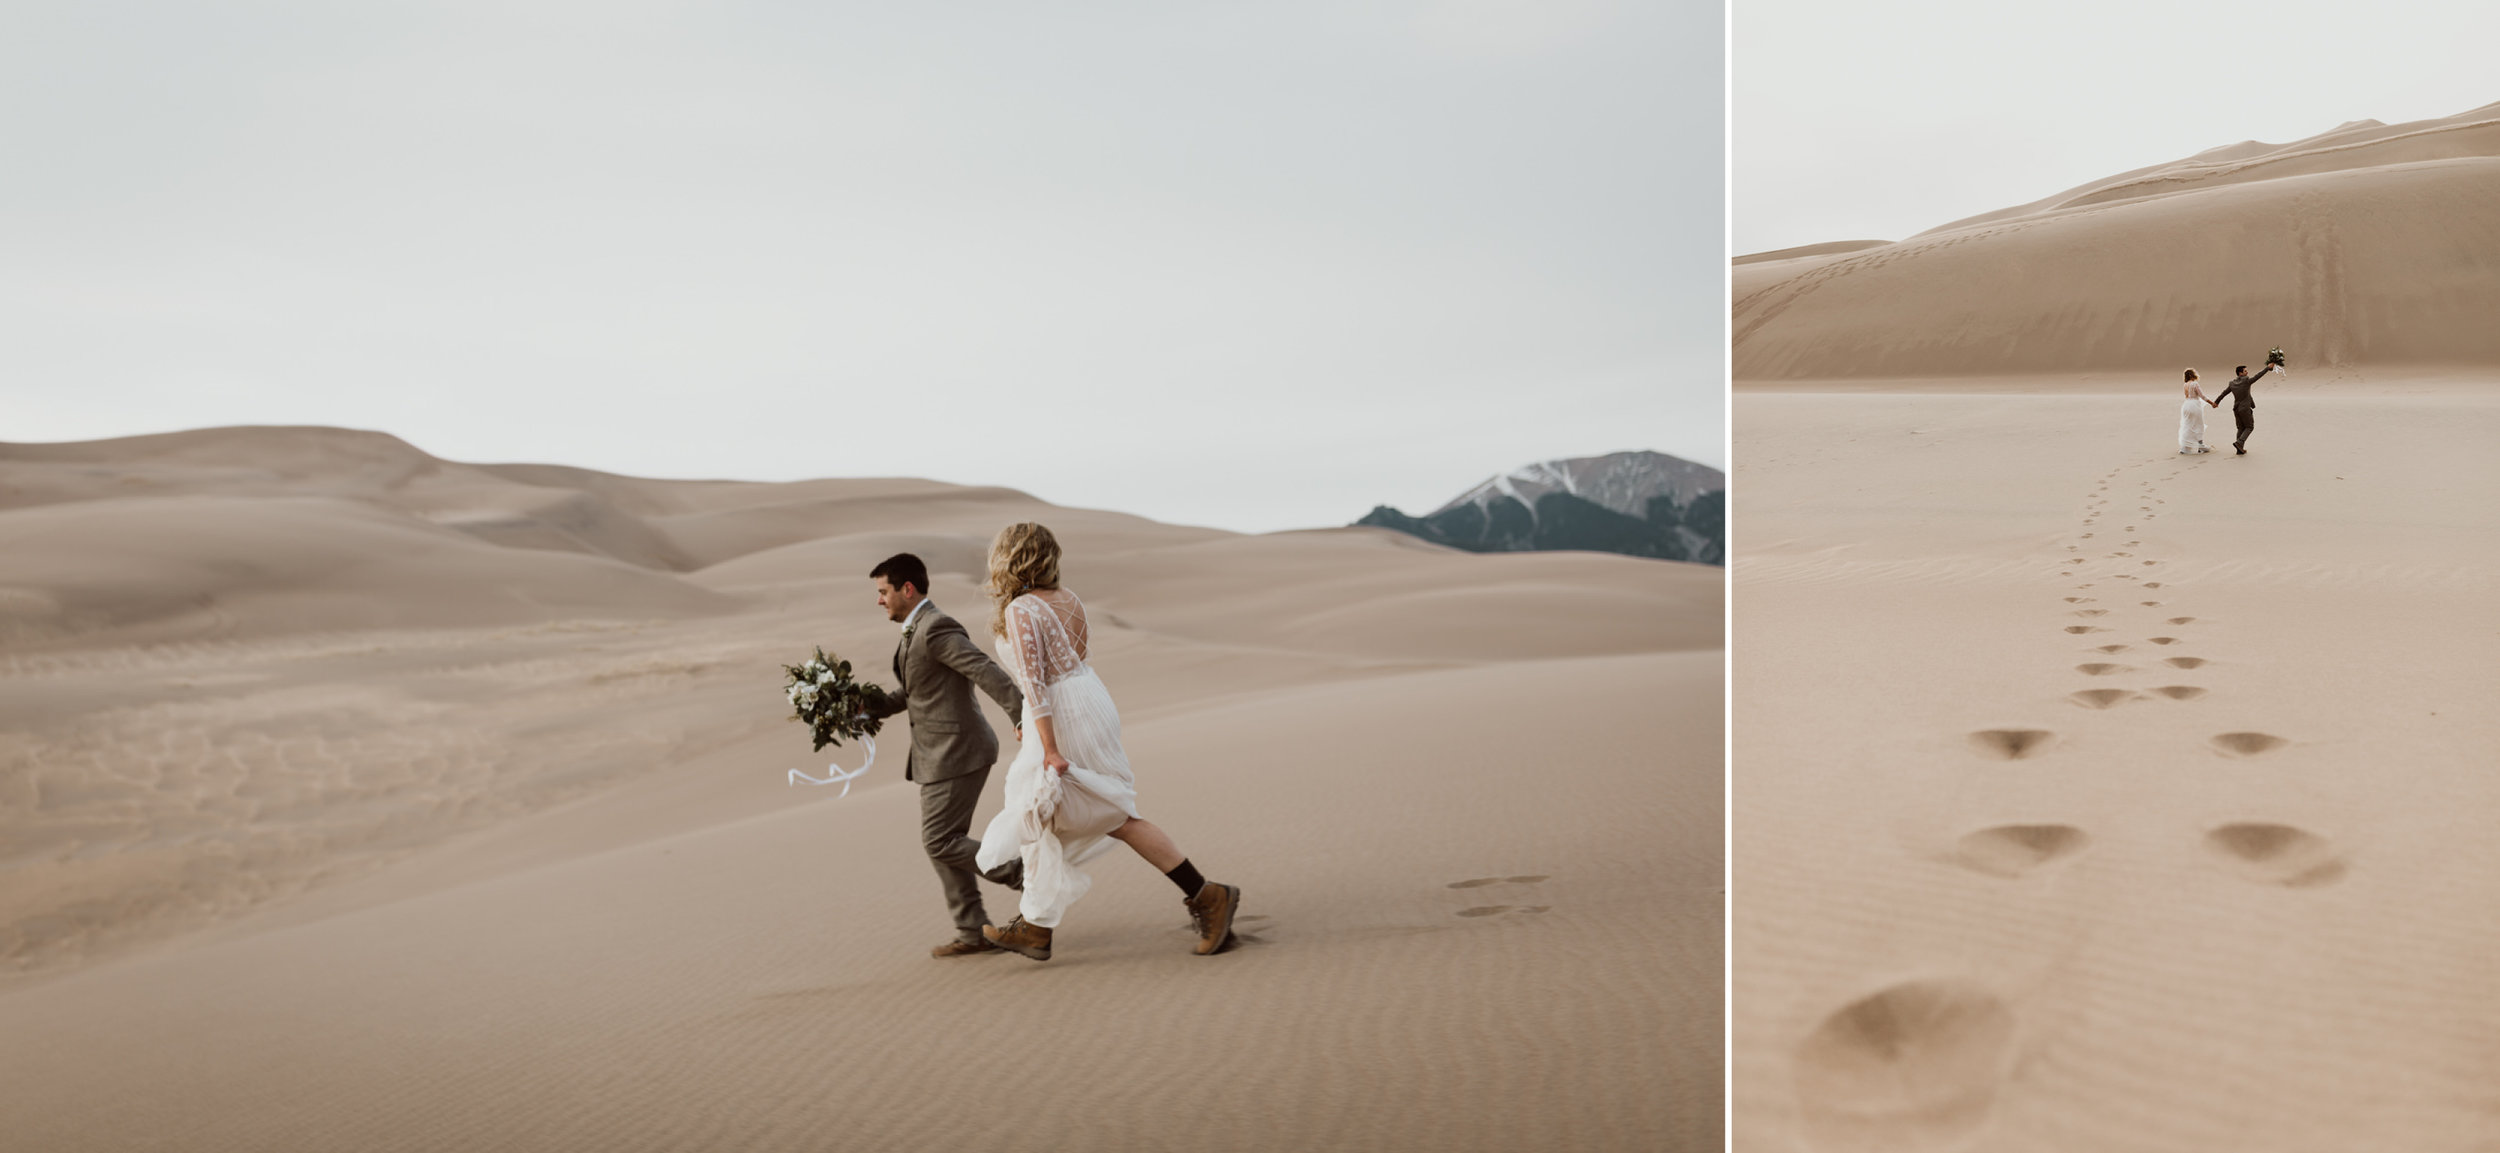 great-sand-dunes-elopement-126.jpg